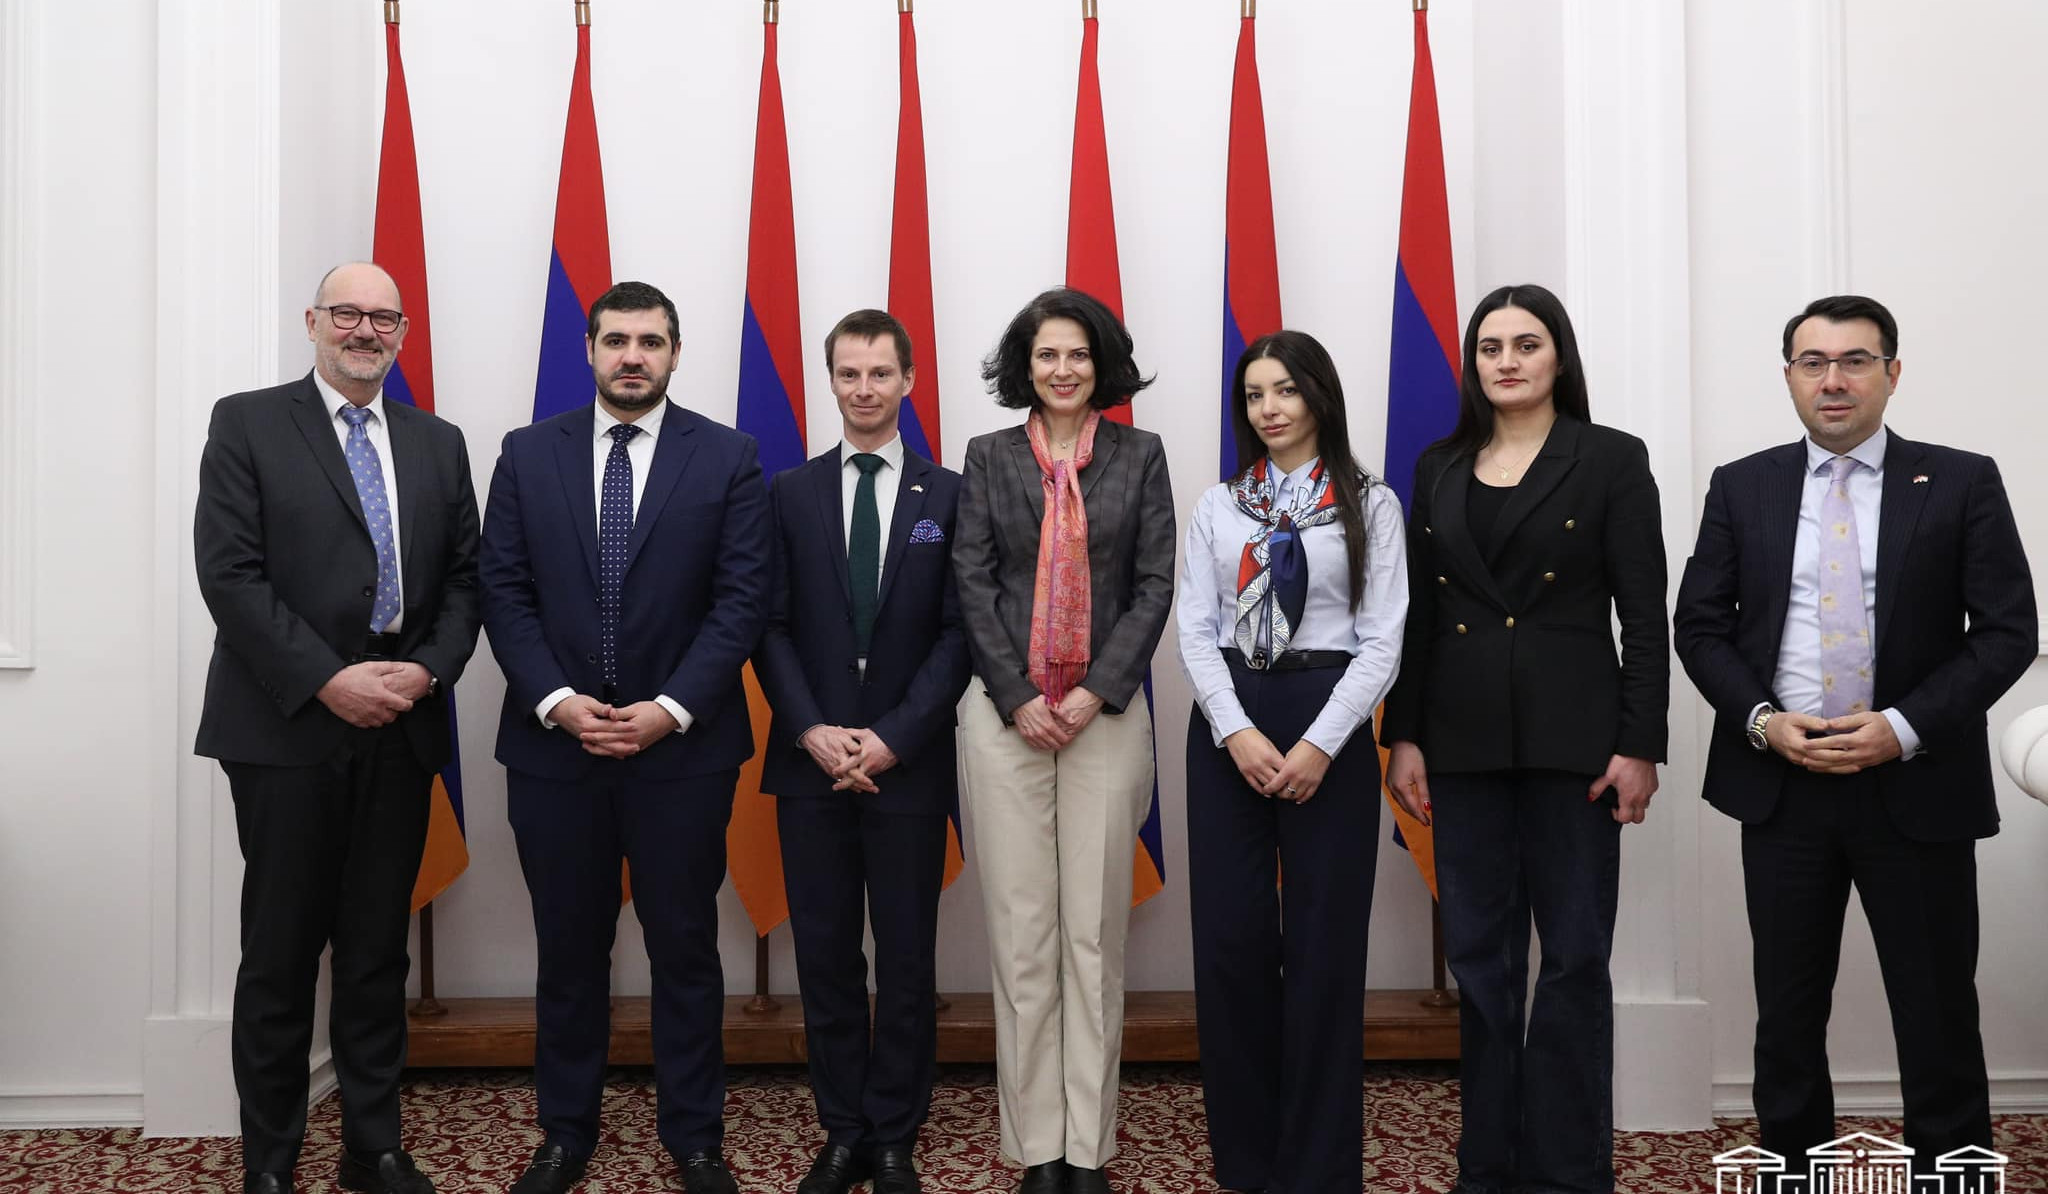 Աջակցում ենք Հայաստանի տարածքային ամբողջականությանը. ՀՀ ԱԺ պատգամավորները հանդիպել են Լյուքսեմբուրգի ԱԳՆ ներկայացուցչին